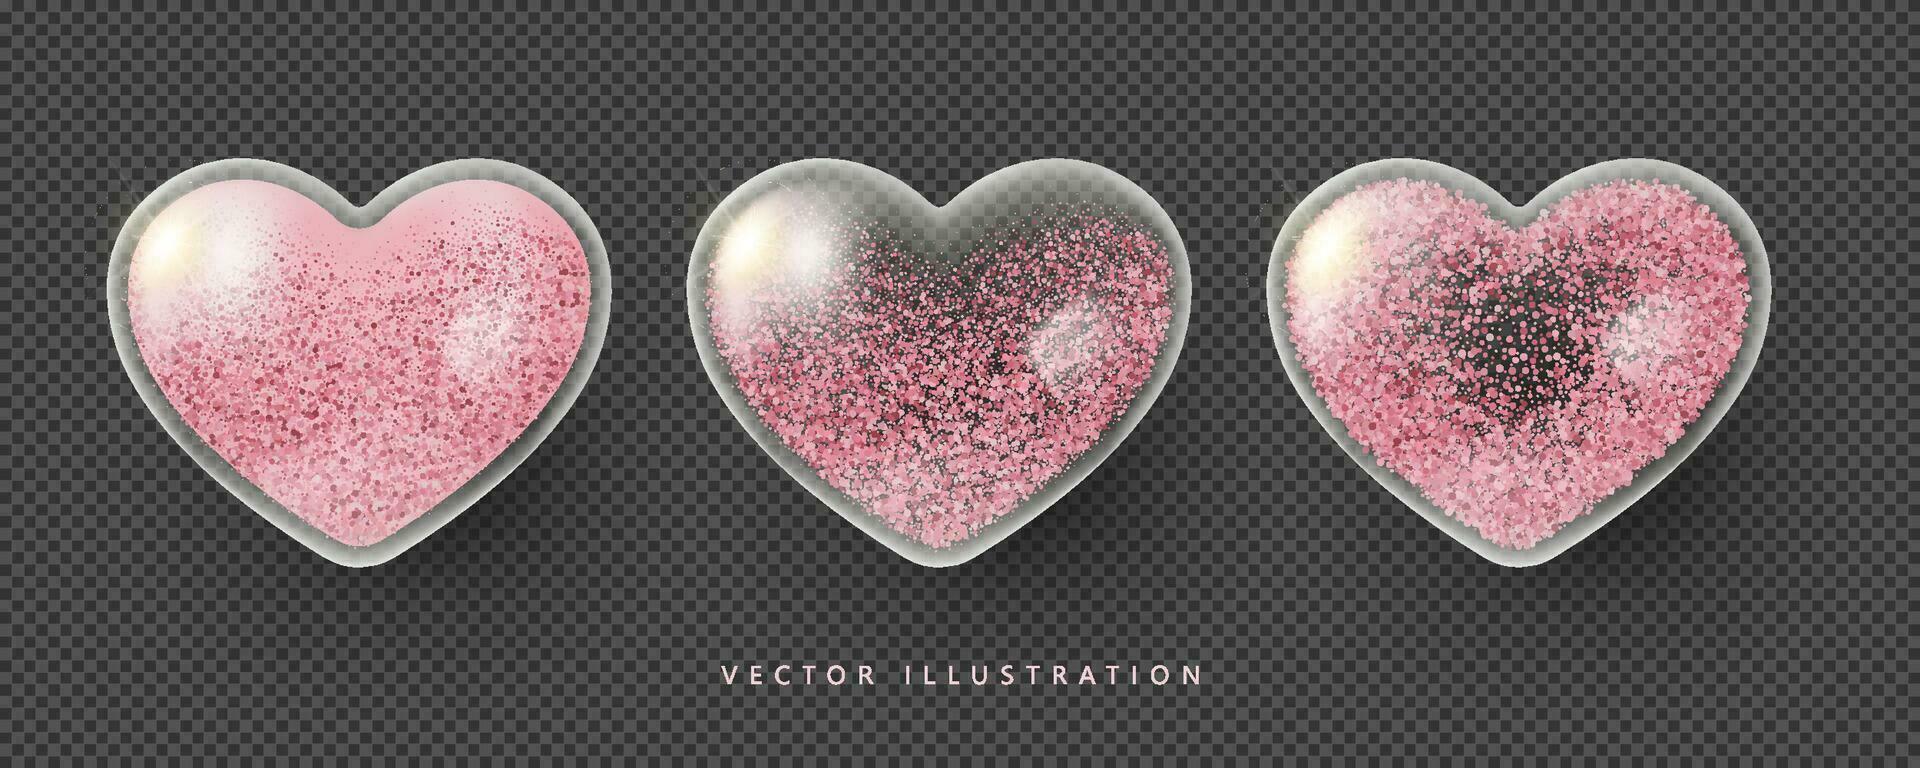 realista Rosa transparente vidro corações com brilho. símbolo do amor, estar meu namorados. vetor ilustração dentro 3d estilo